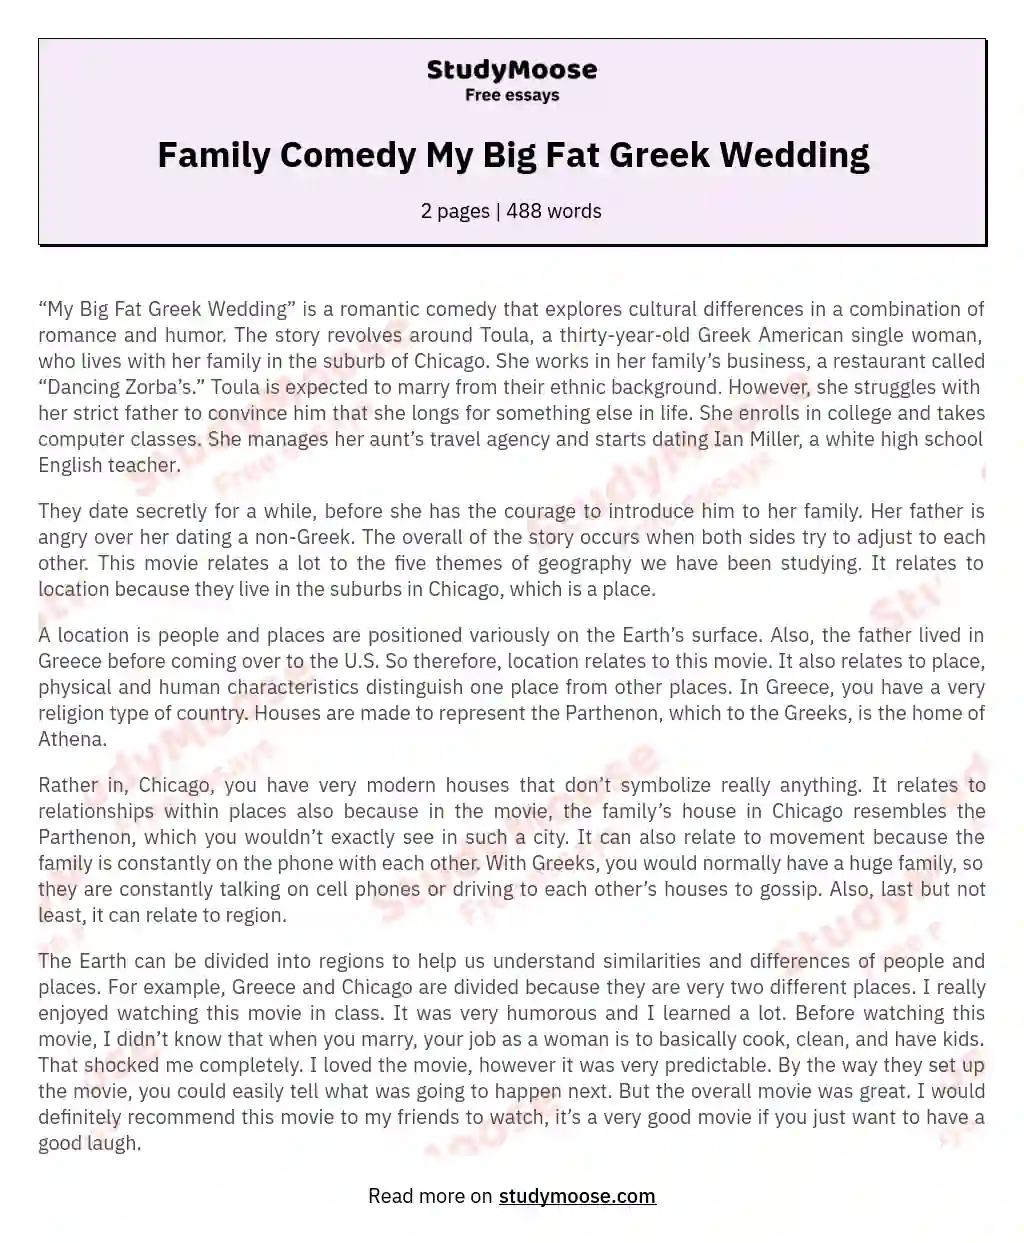 Family Comedy My Big Fat Greek Wedding